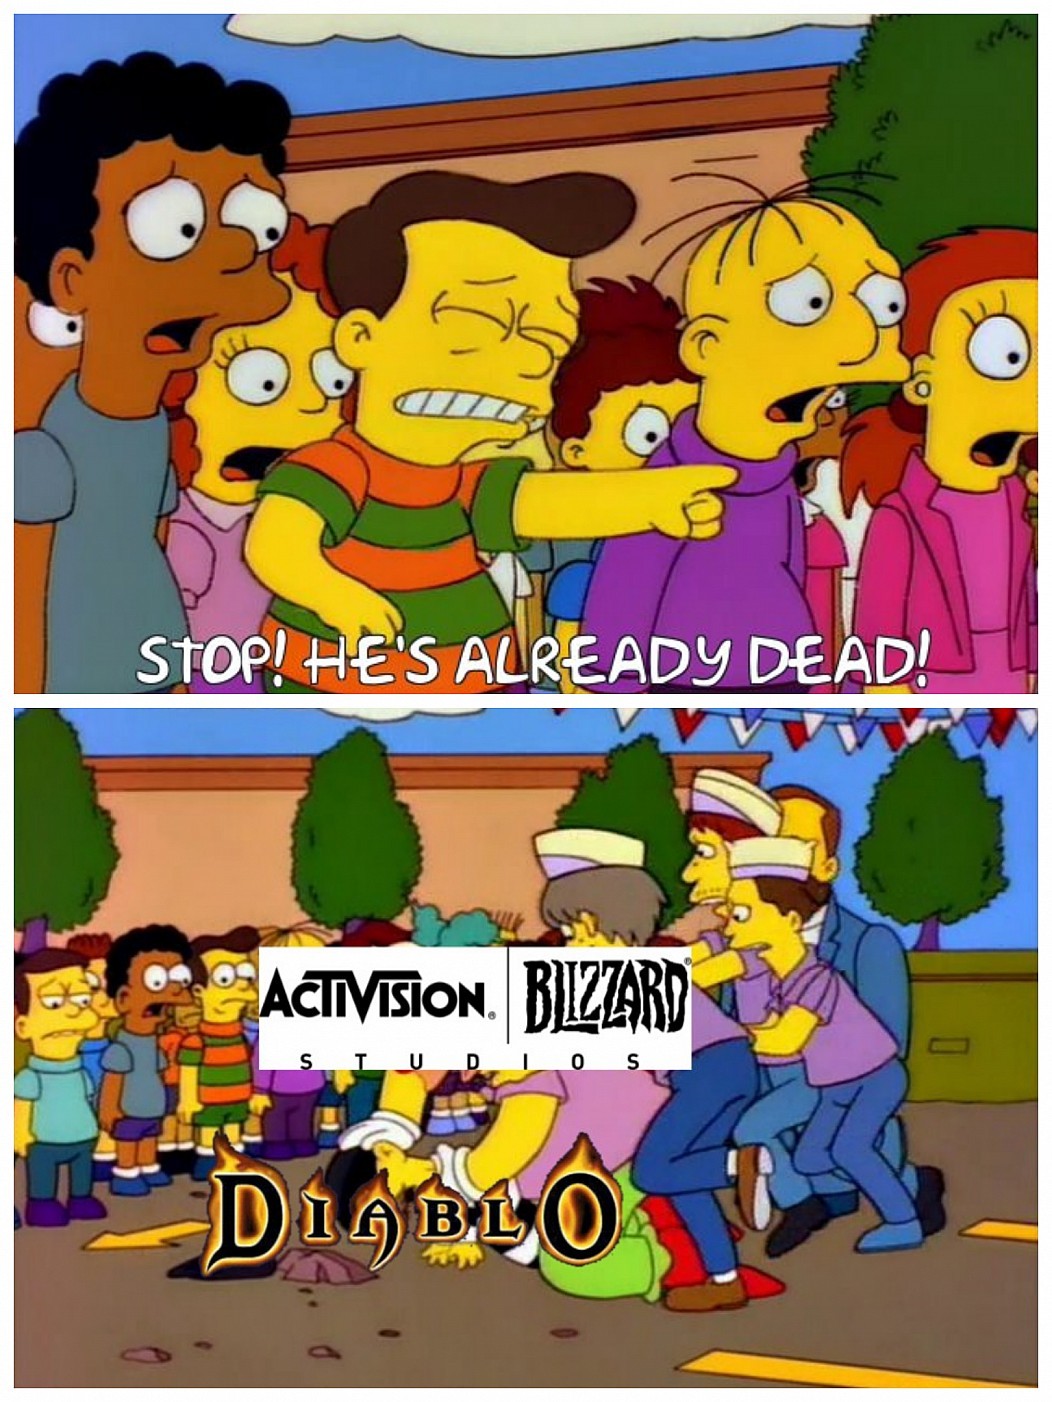 diablo immortal meme - Stop! He'S Already Dead! Sa C Activision. Bizzard s Iudio Din blo